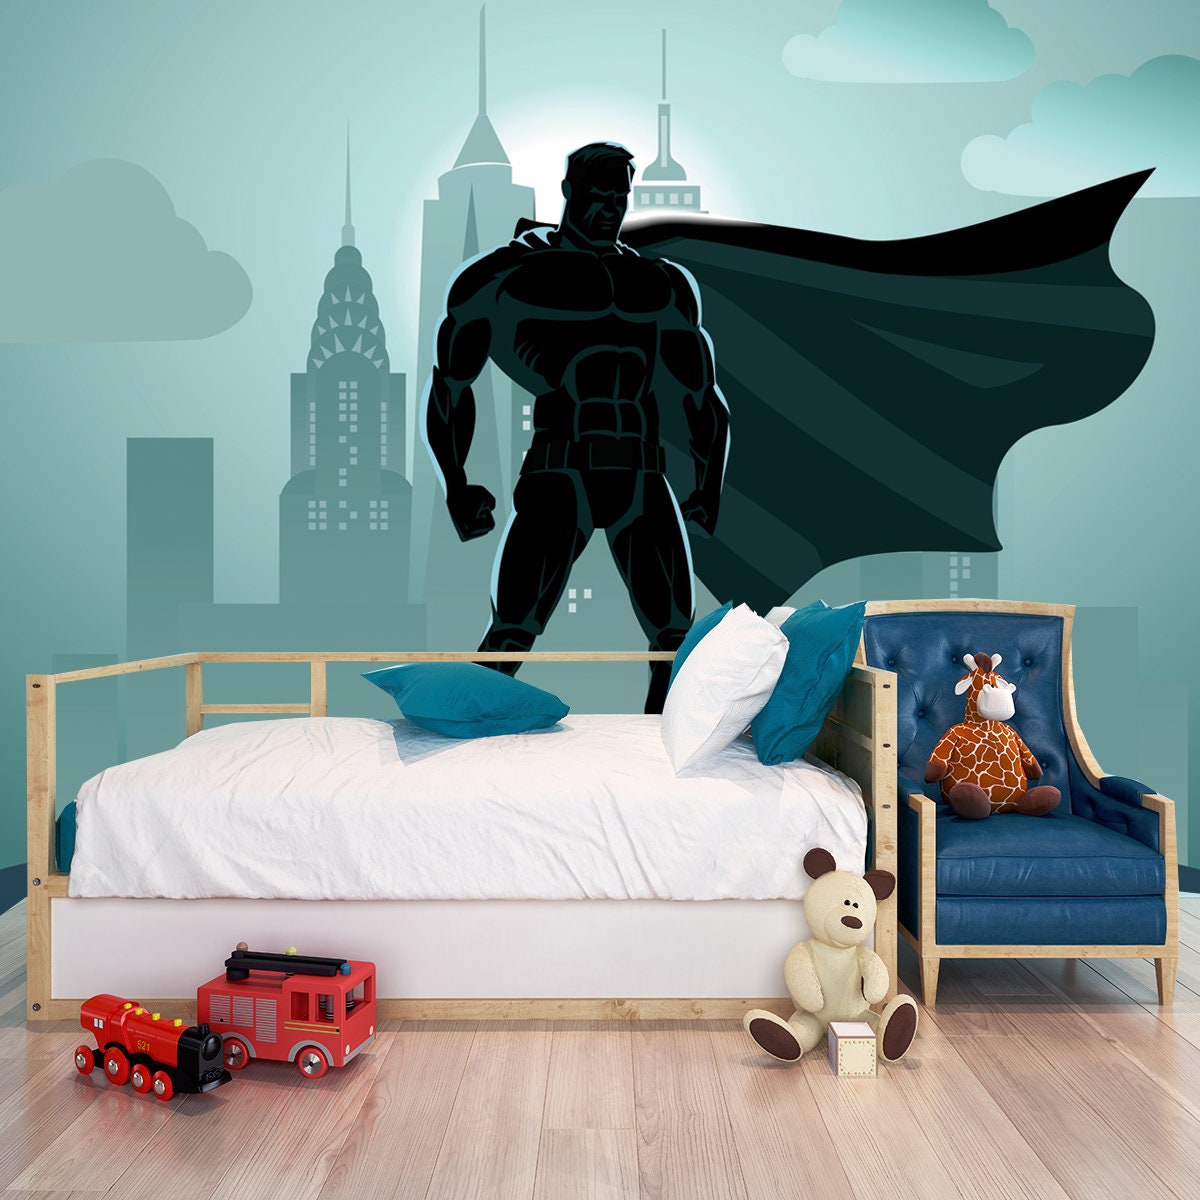 Superhero in City: Superhero Watching Over the City Wallpaper Boy Bedroom Mural